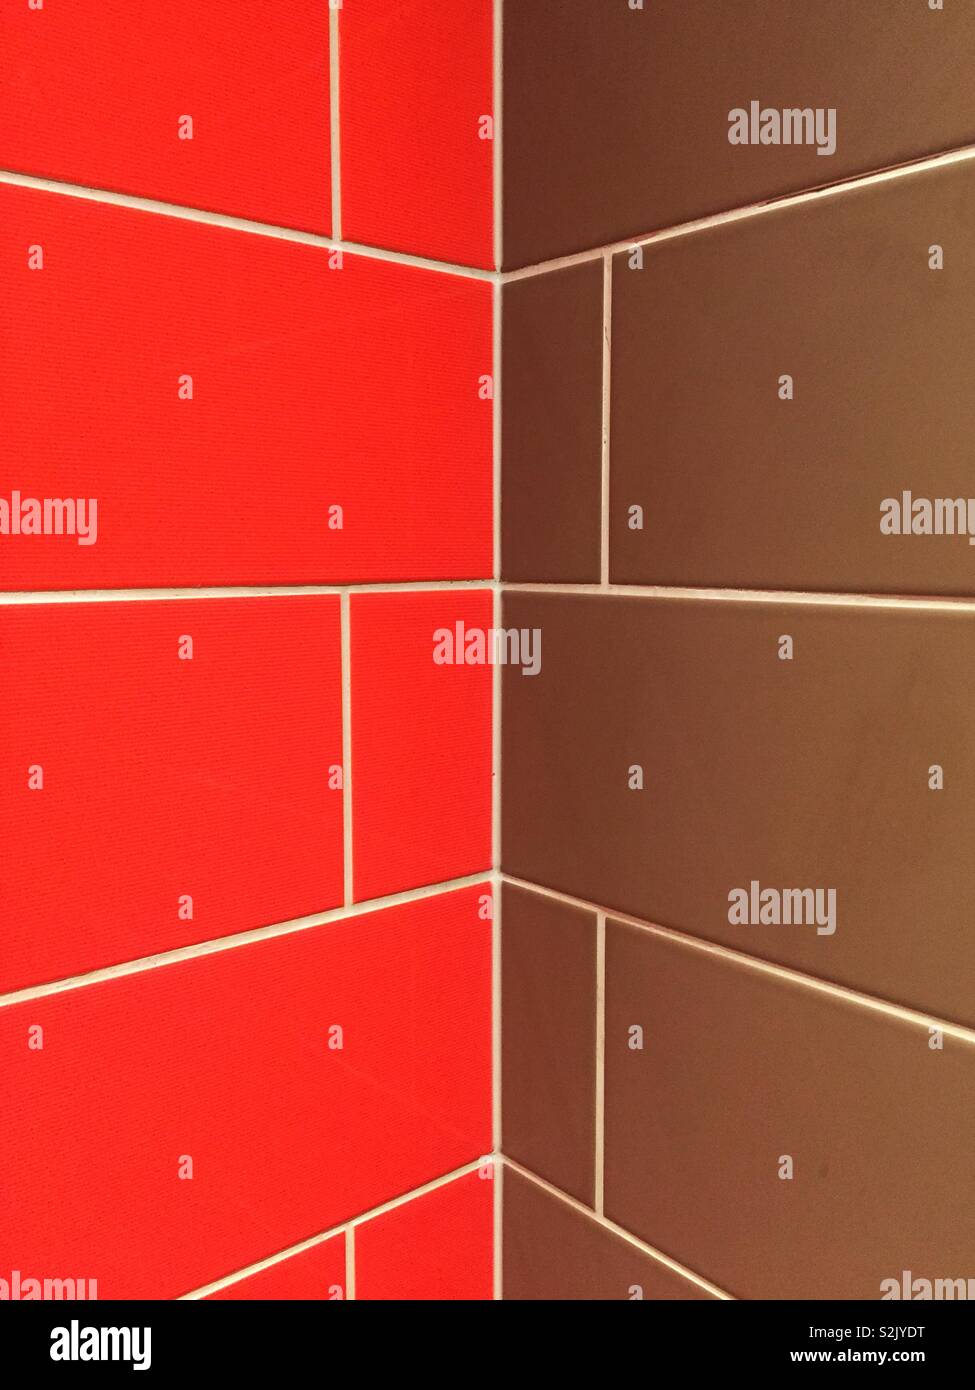 E sfondo astratto di un colorato di rosso e marrone parete piastrellata con prospettiva in diminuzione in un angolo con lo spazio di copia Foto Stock